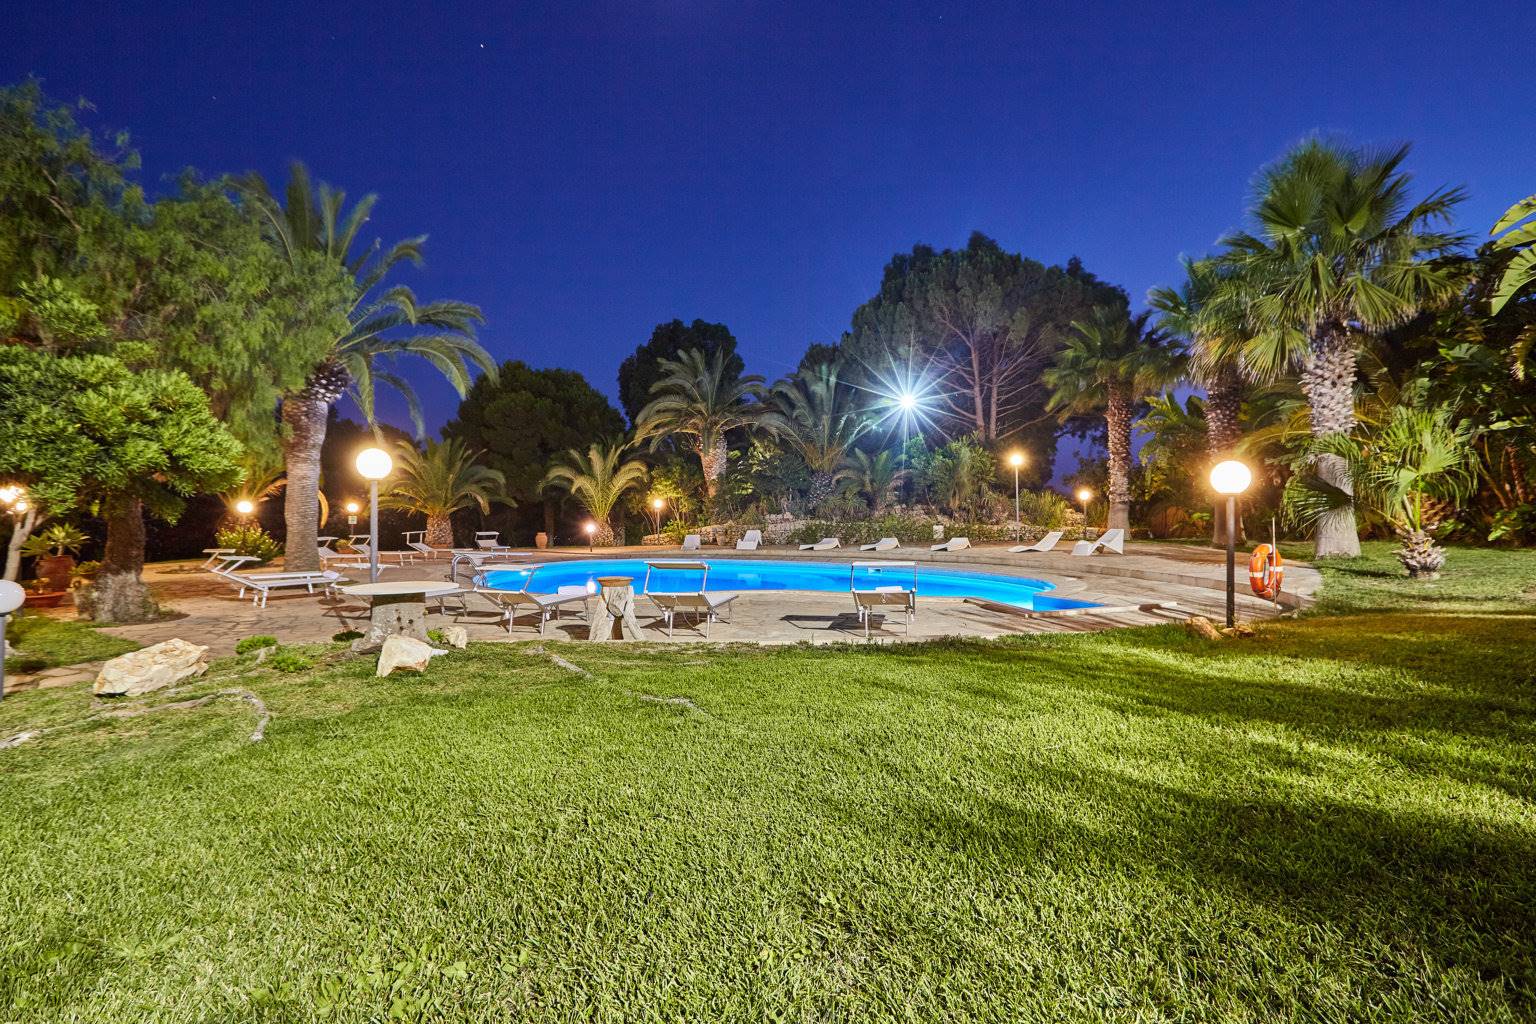 Villa con piscina in vendita a Marina di Modica a 300 m dal mare. Splendida proprietà immobiliare in vendita composta da: villa principale di 600 mq, 